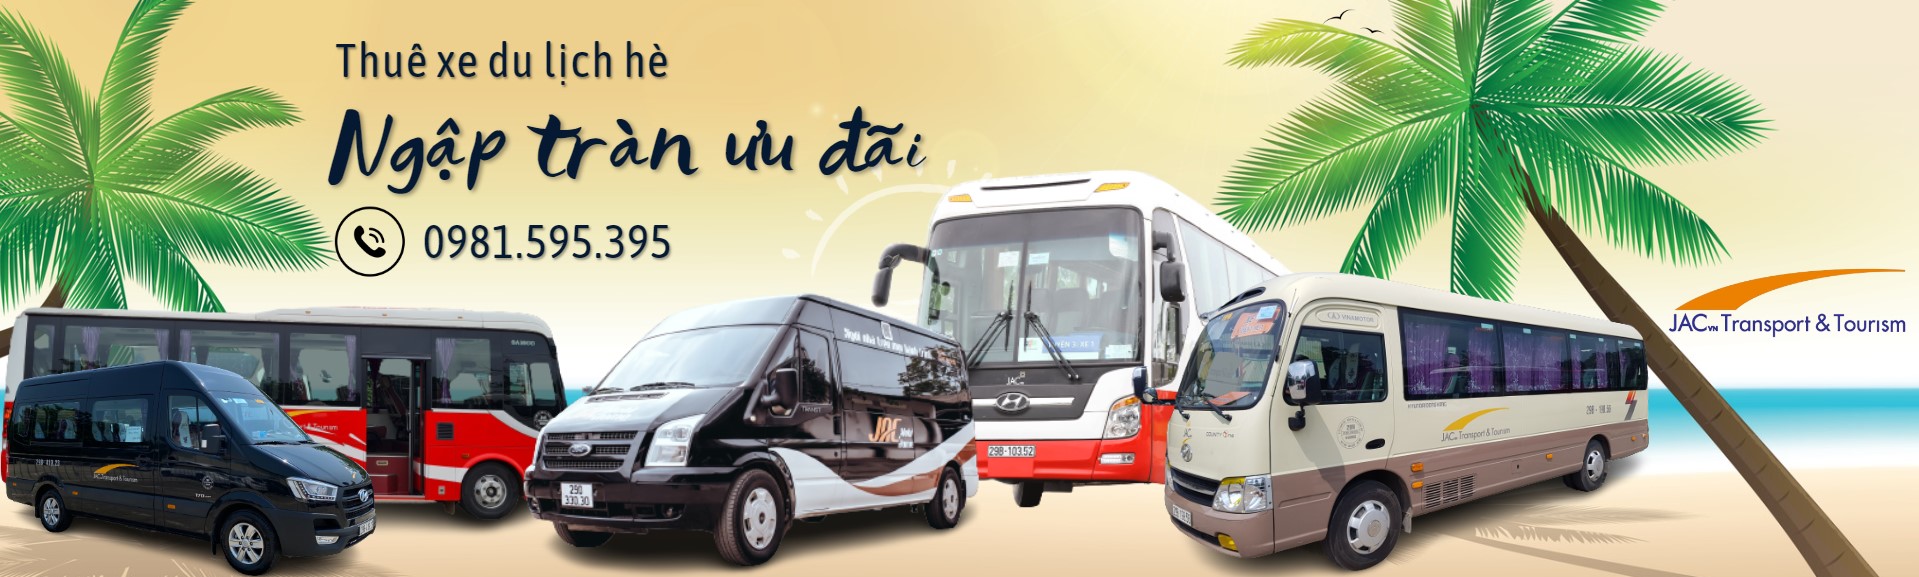 Thuê xe du lịch Hà Nội, thuê xe hợp đồng giá tốt